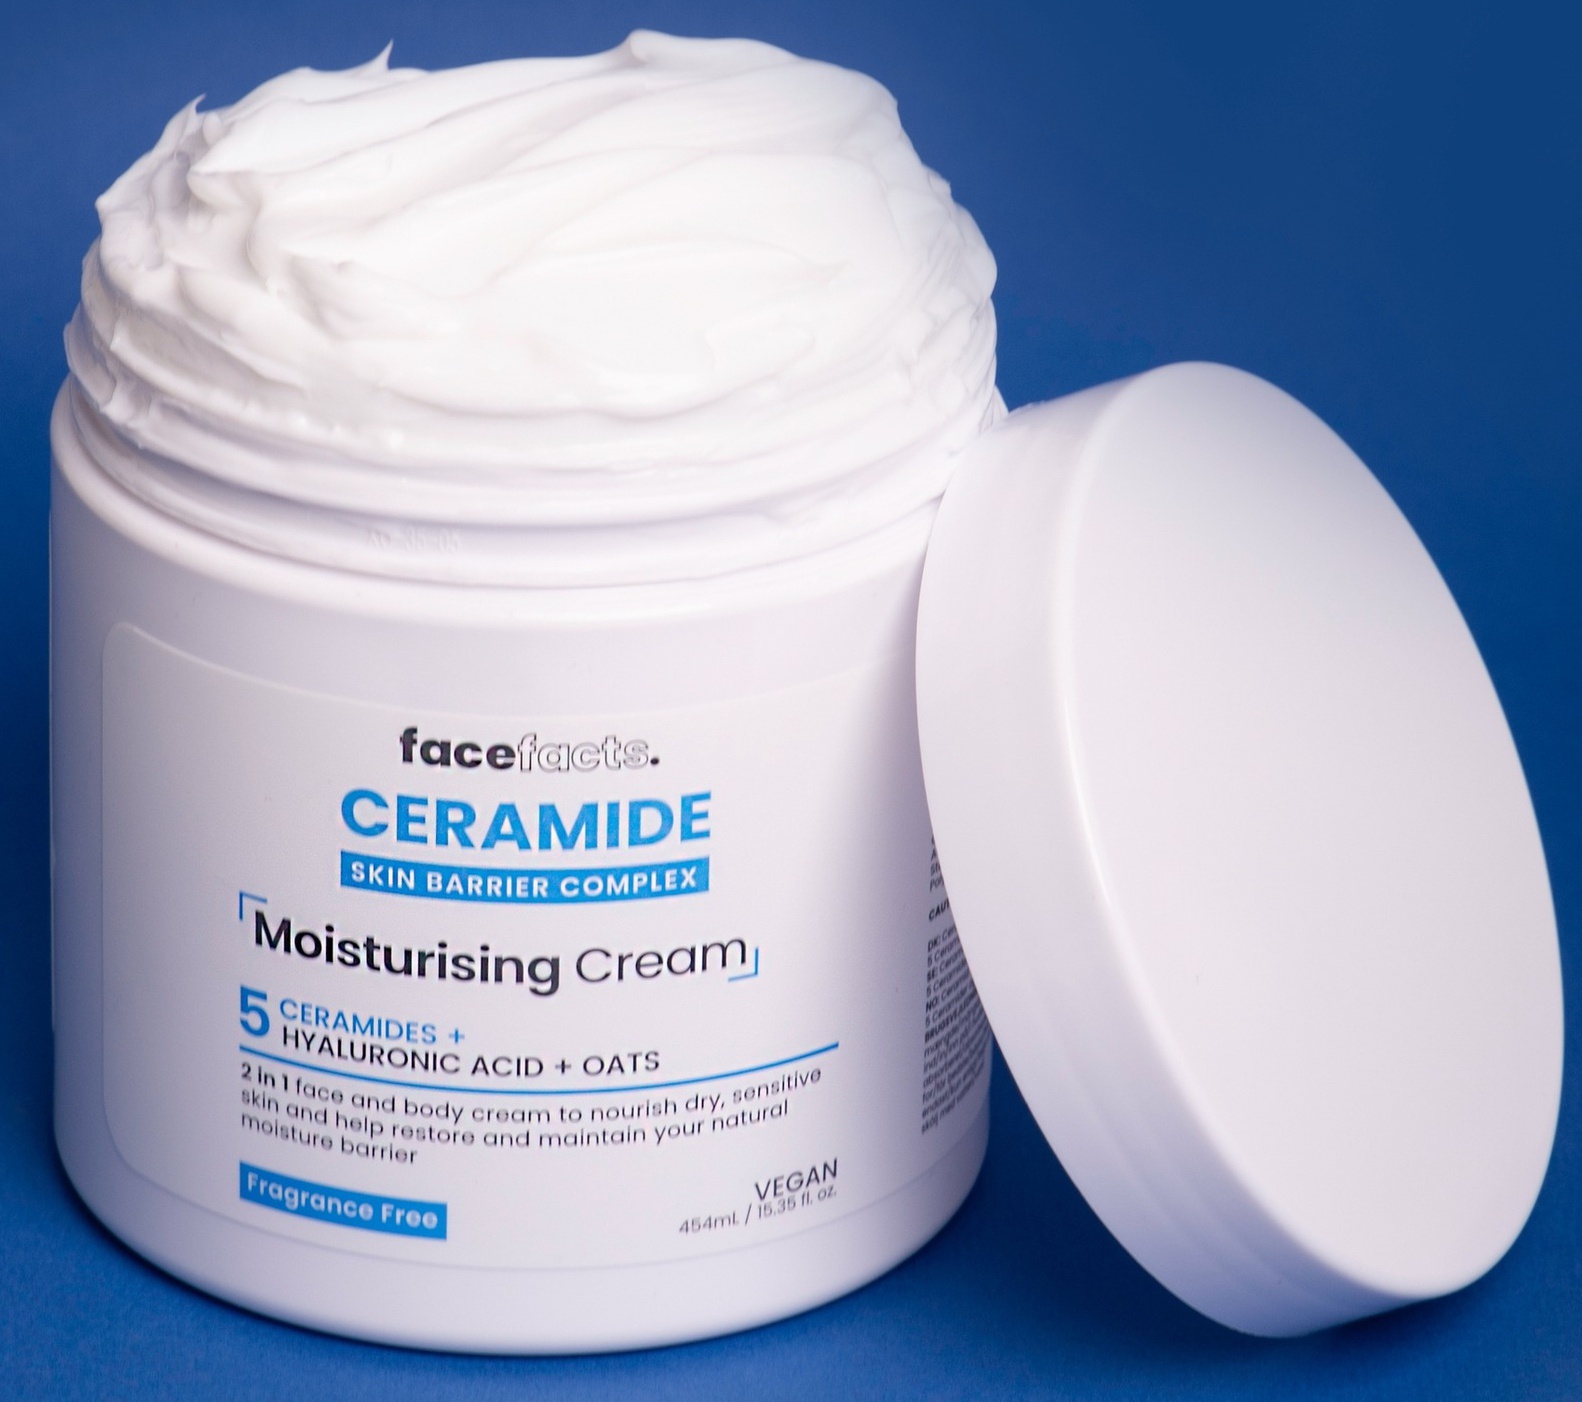 Face facts Ceramide Moisturising Body Cream